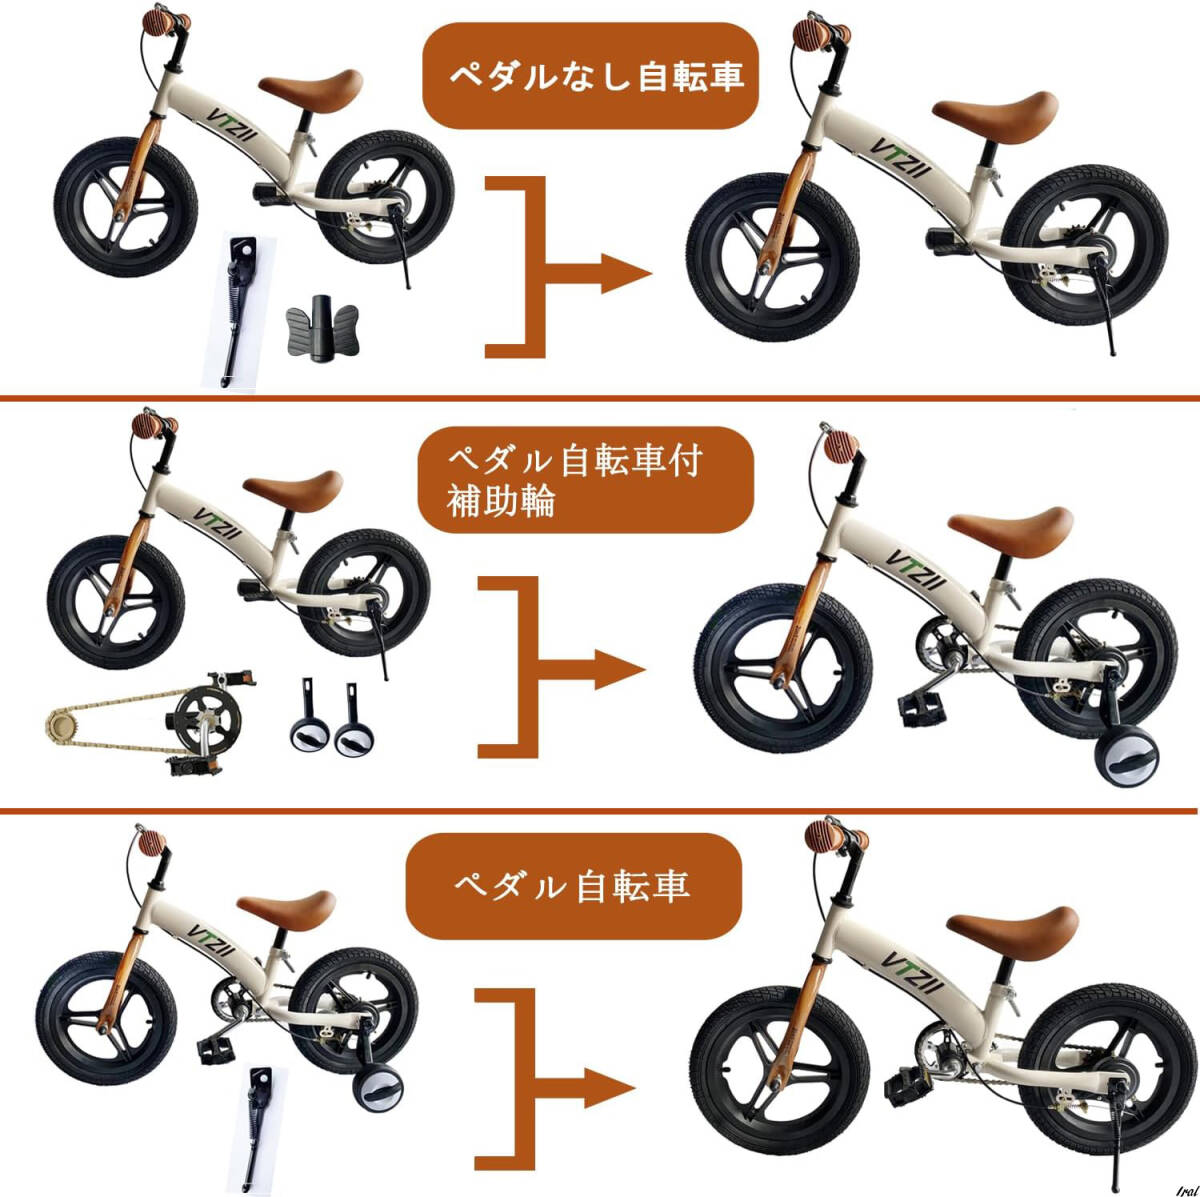  толчок мотоцикл 2-in-1, модный подарок для малышей велосипед велосипед без педалей детский велосипед педаль пассажирский колесо 